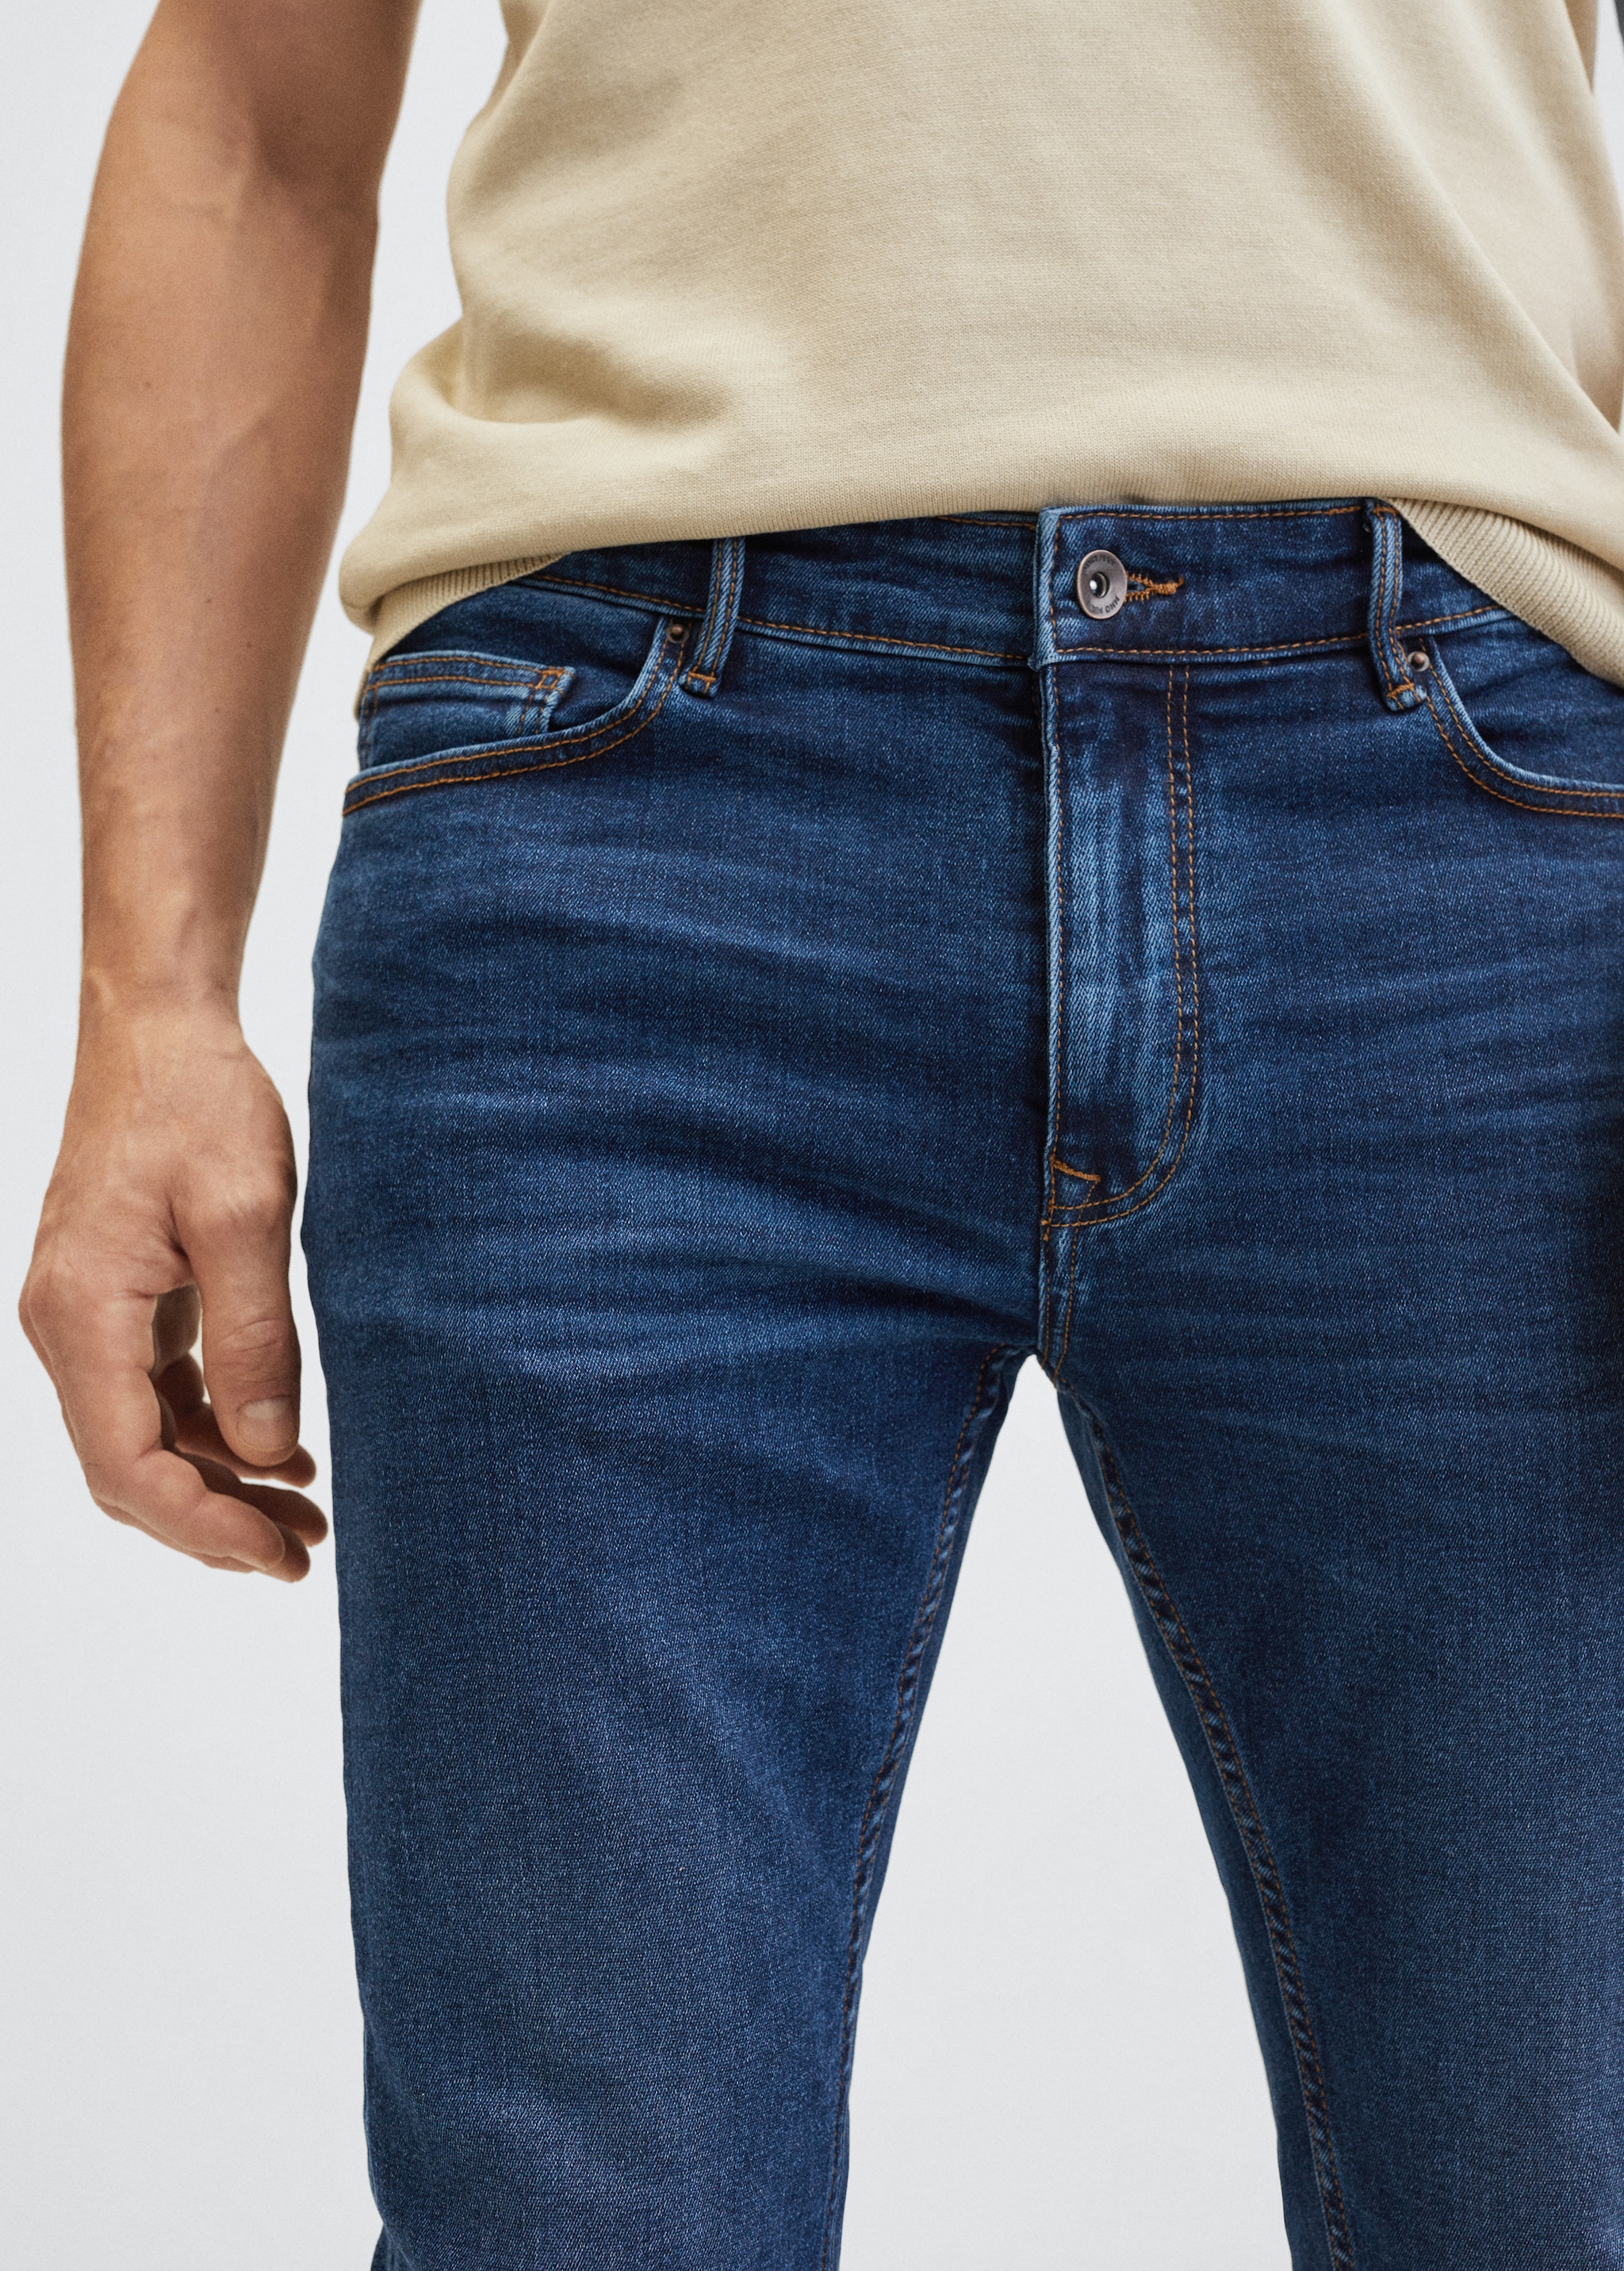 Jeans Jude skinny lavado oscuro - Detalle del artículo 3